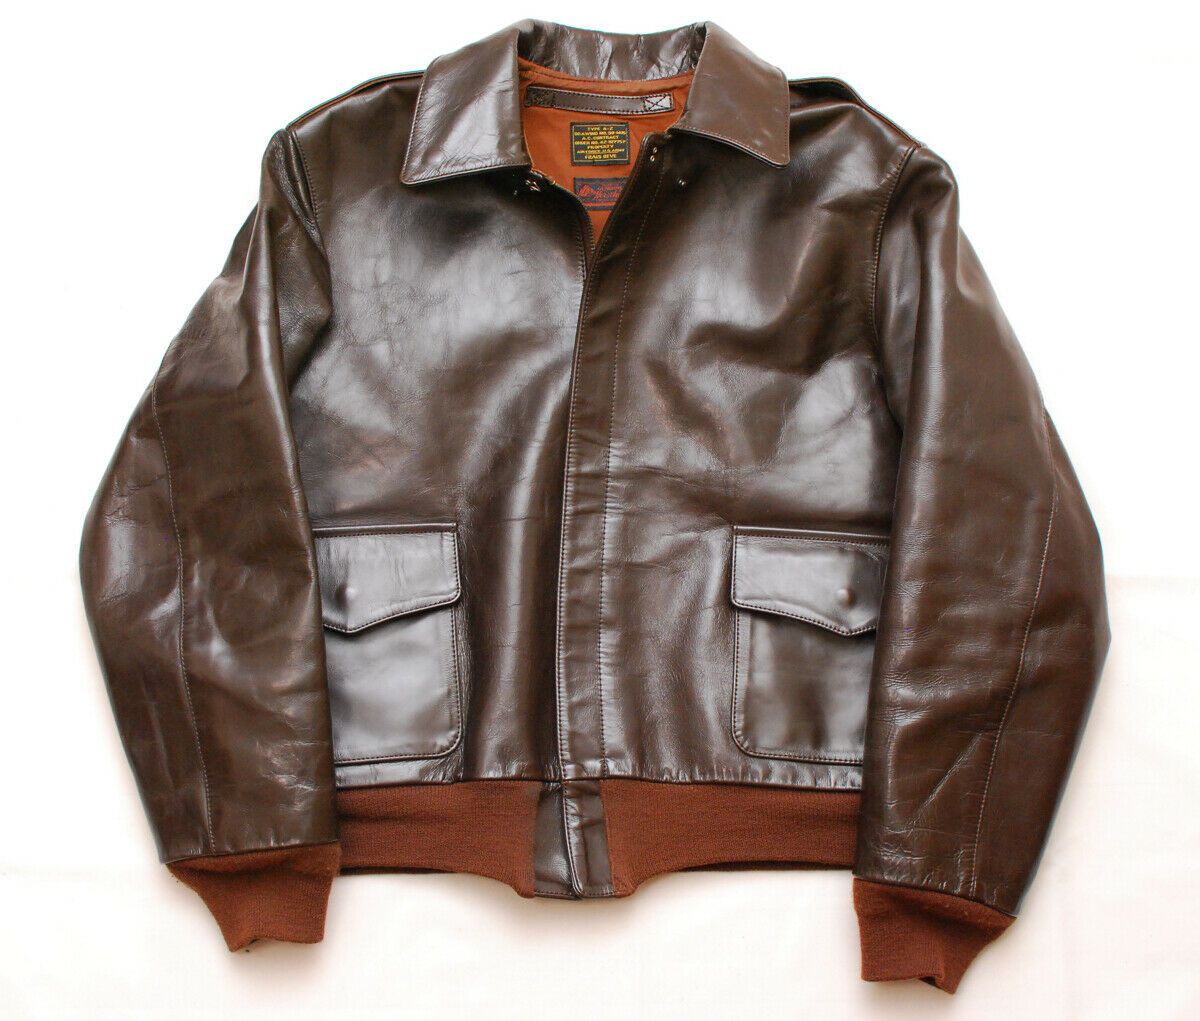 Frais Reve A-2 Horsehide Jacket (40-42 Short?) | Vintage Leather ...